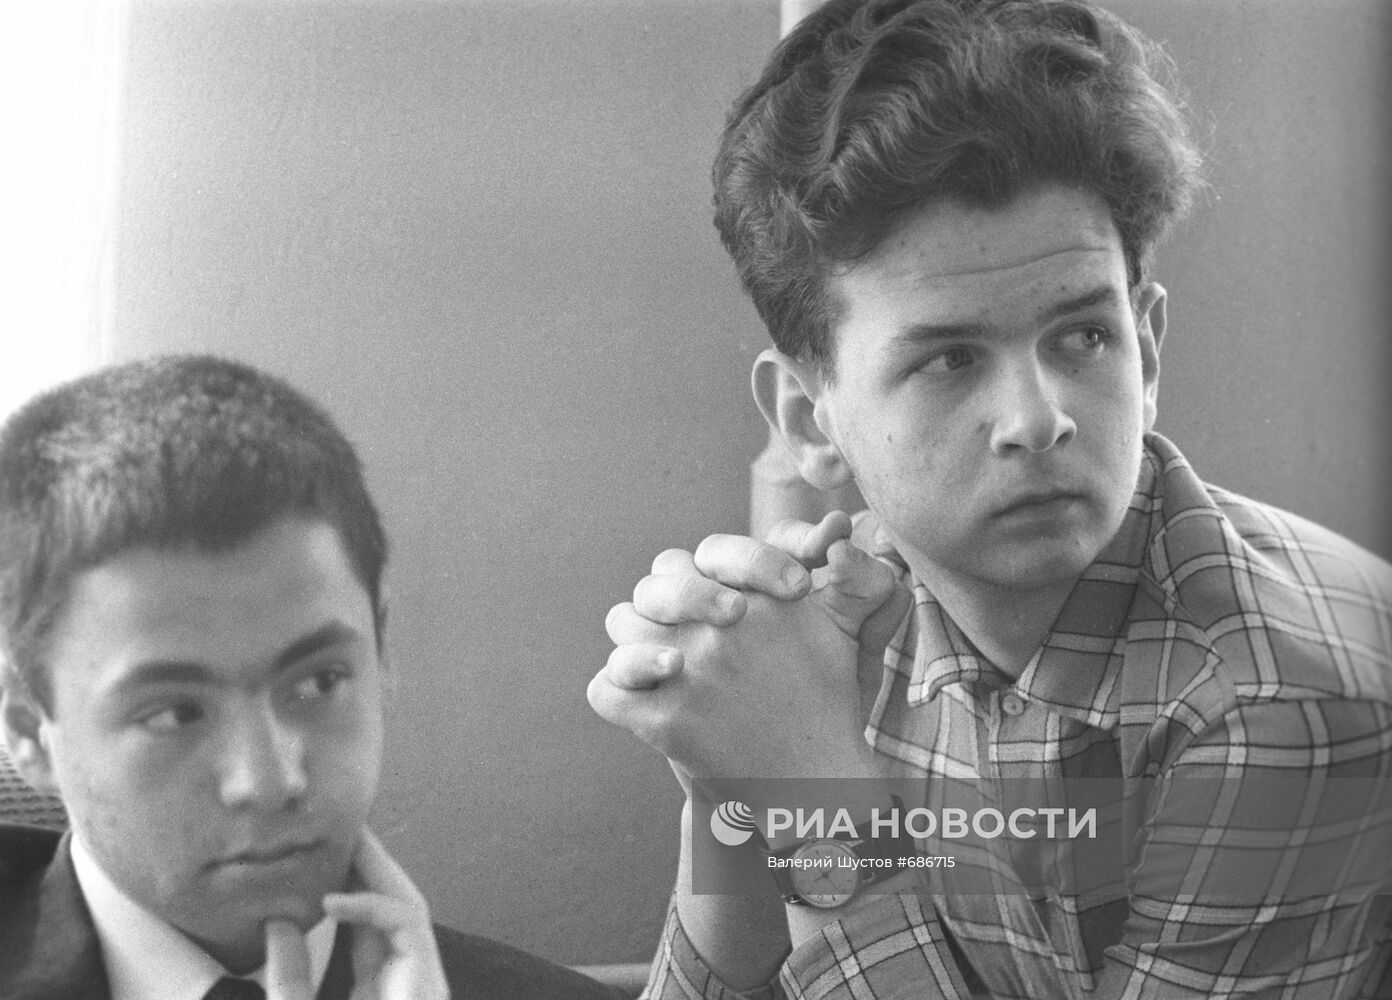 Ученики математической школы Михаил Кишиневский и Виктор Останин